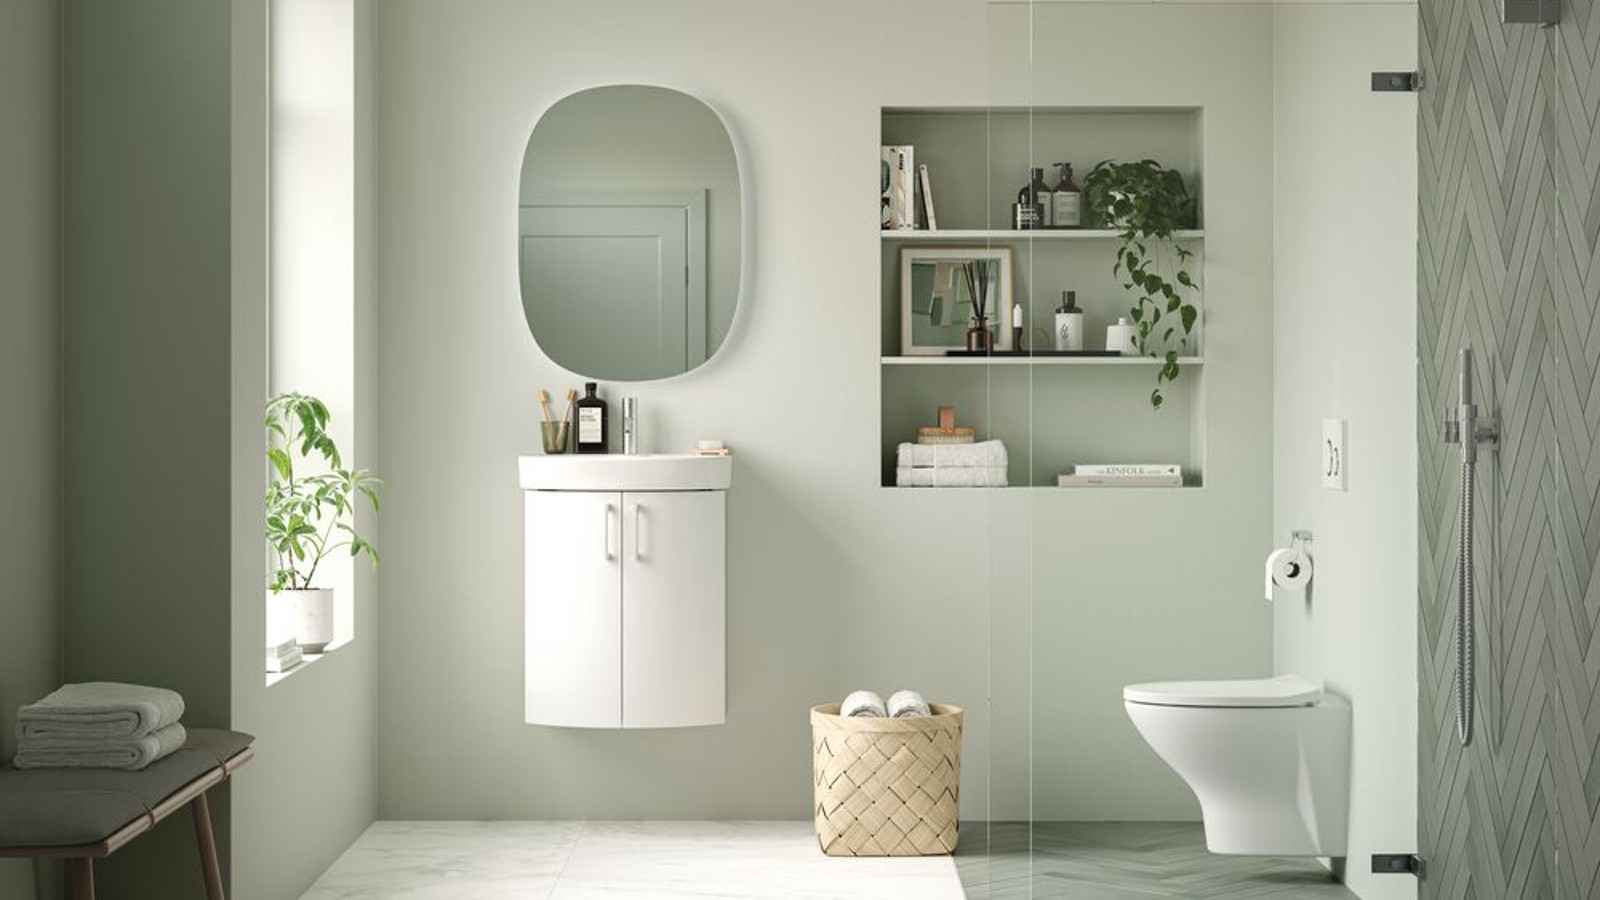 Löydä tyyliisi sopiva kylpyhuone IDOn kalusteista ja tuotteista